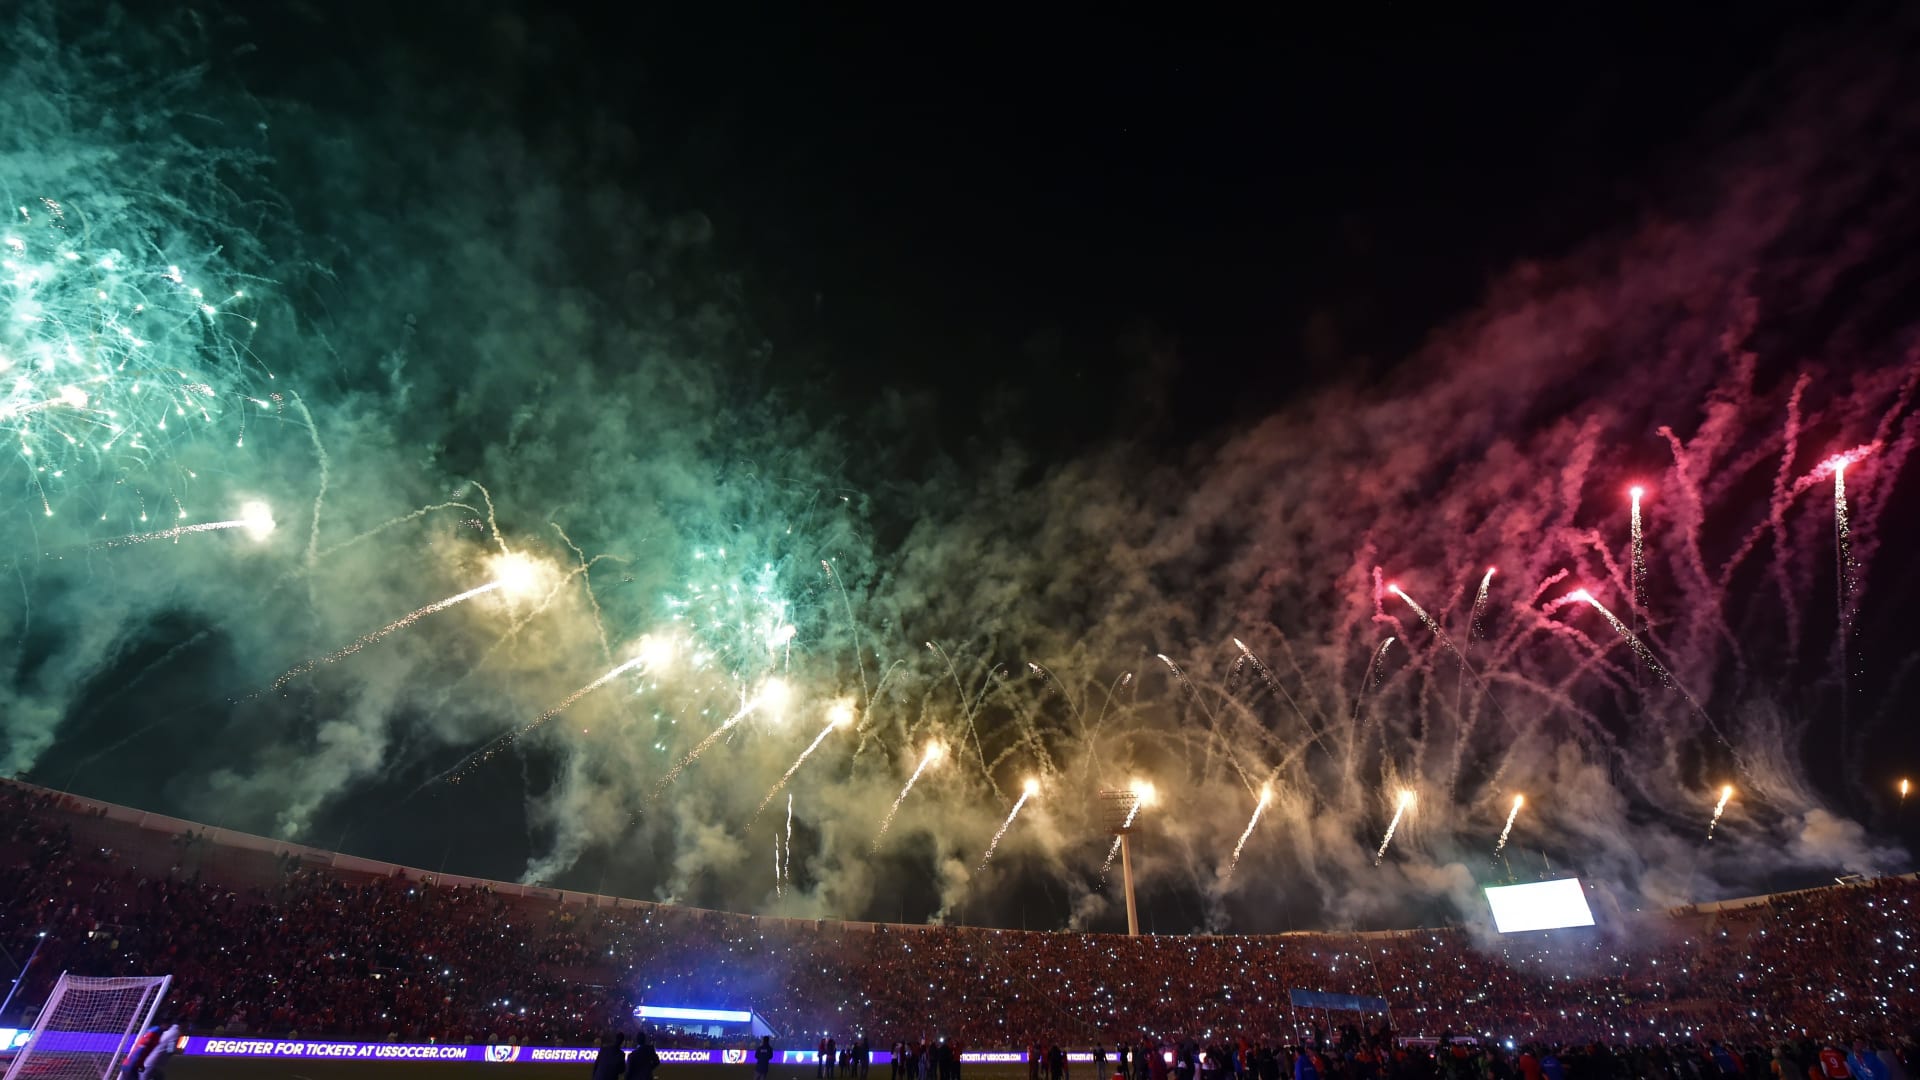 الألعاب النارية تزين الملعب الذي احتضن نهائيات بطولة "كوبا أمريكا" التي فاز فيها منتخب تشيلي.